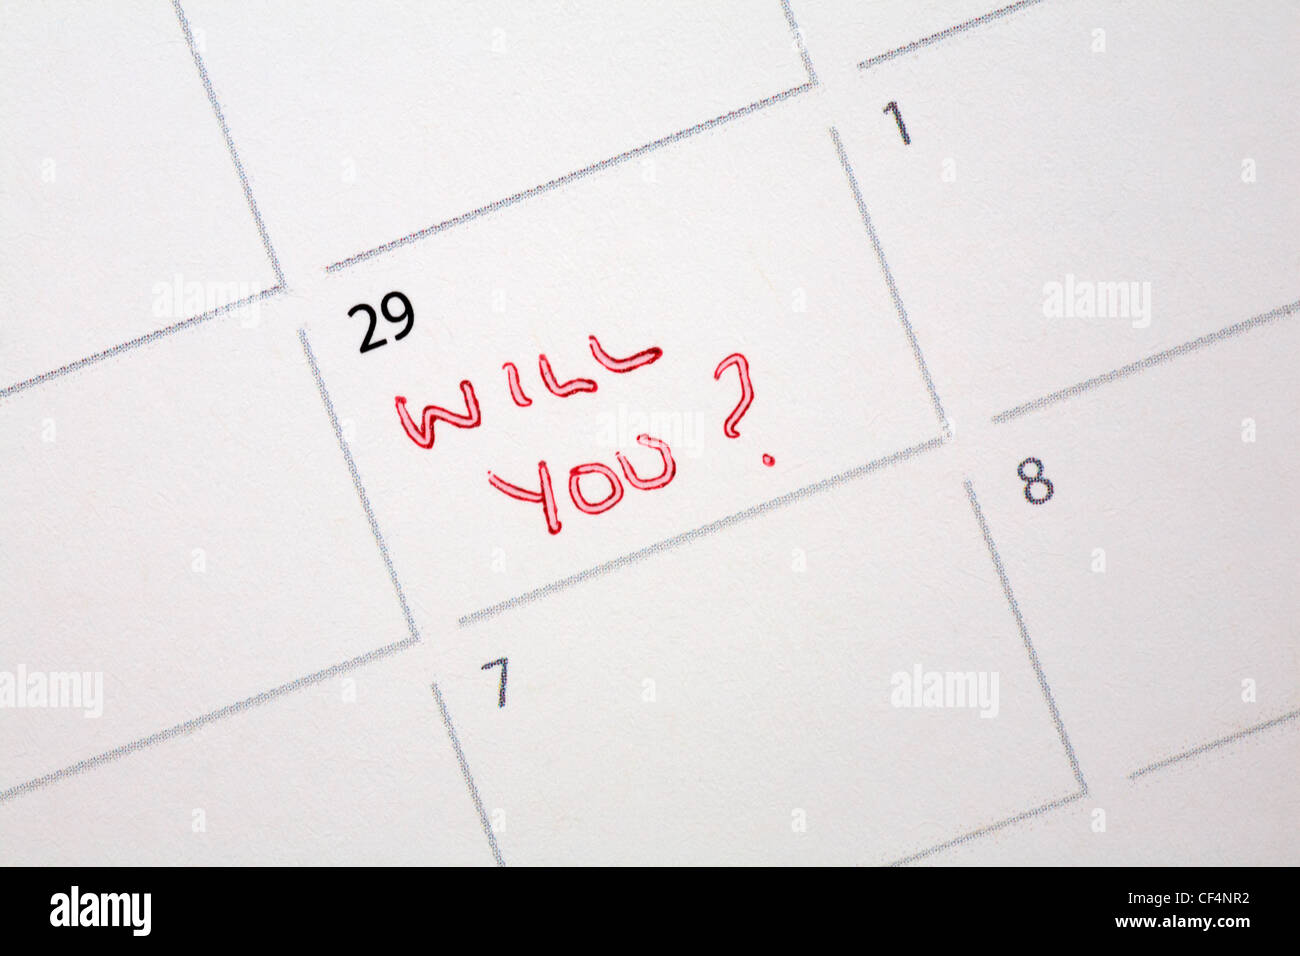 29 febbraio anno bisestile con messaggio vuoi? scritto sul calendario - proposta per l'anno bisestile Foto Stock